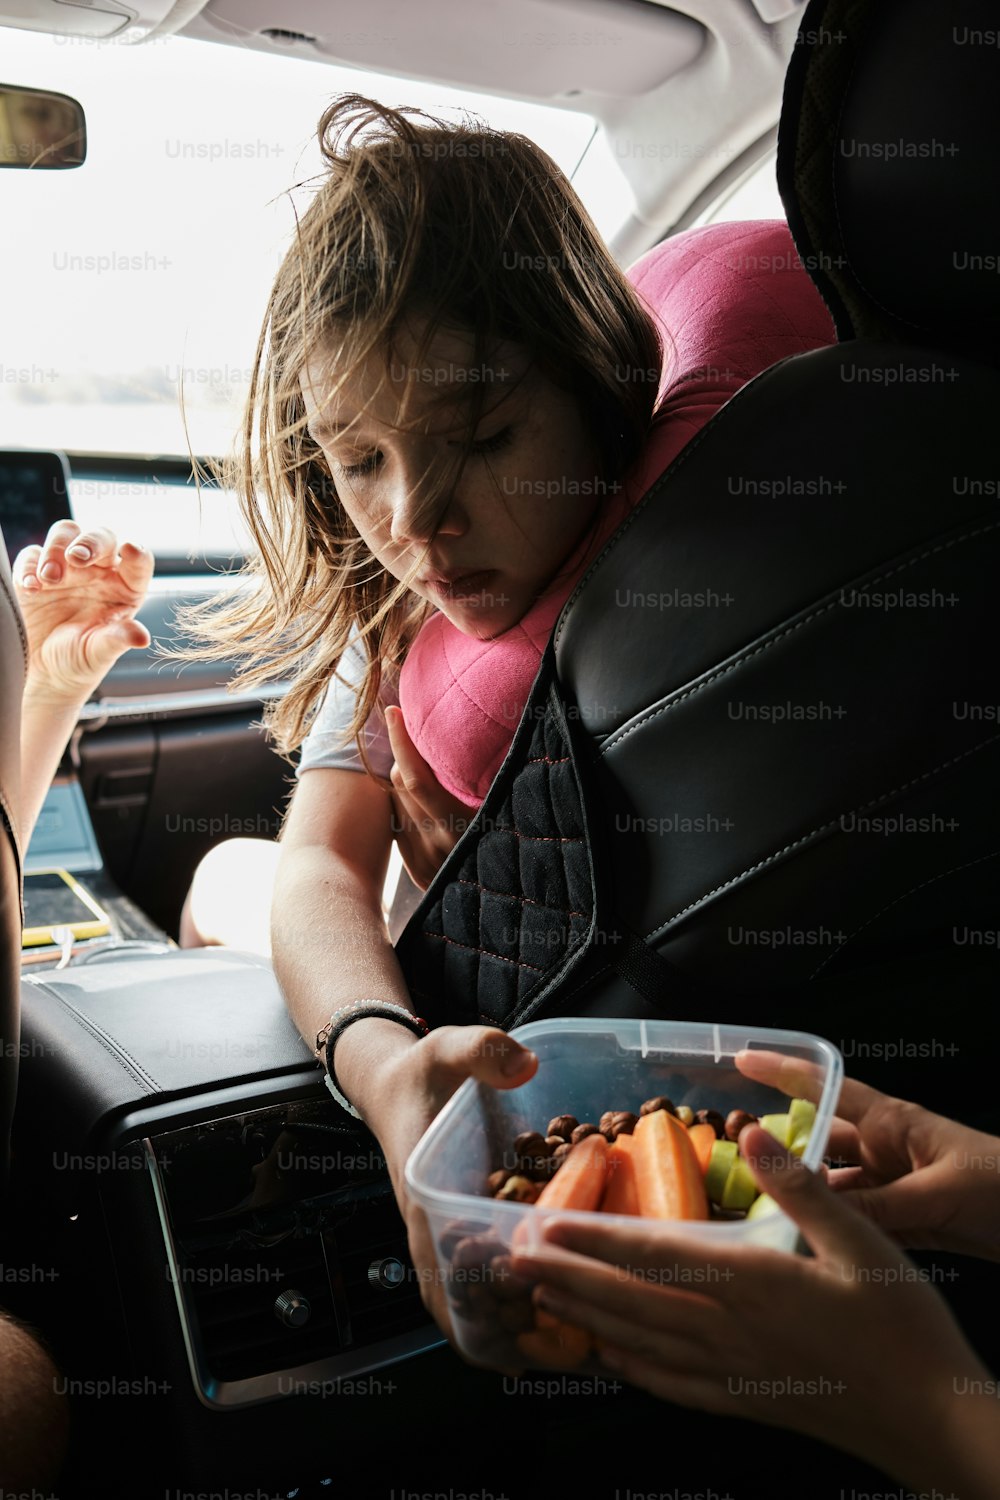 차 뒷좌석에 앉아 있는 어린 소녀